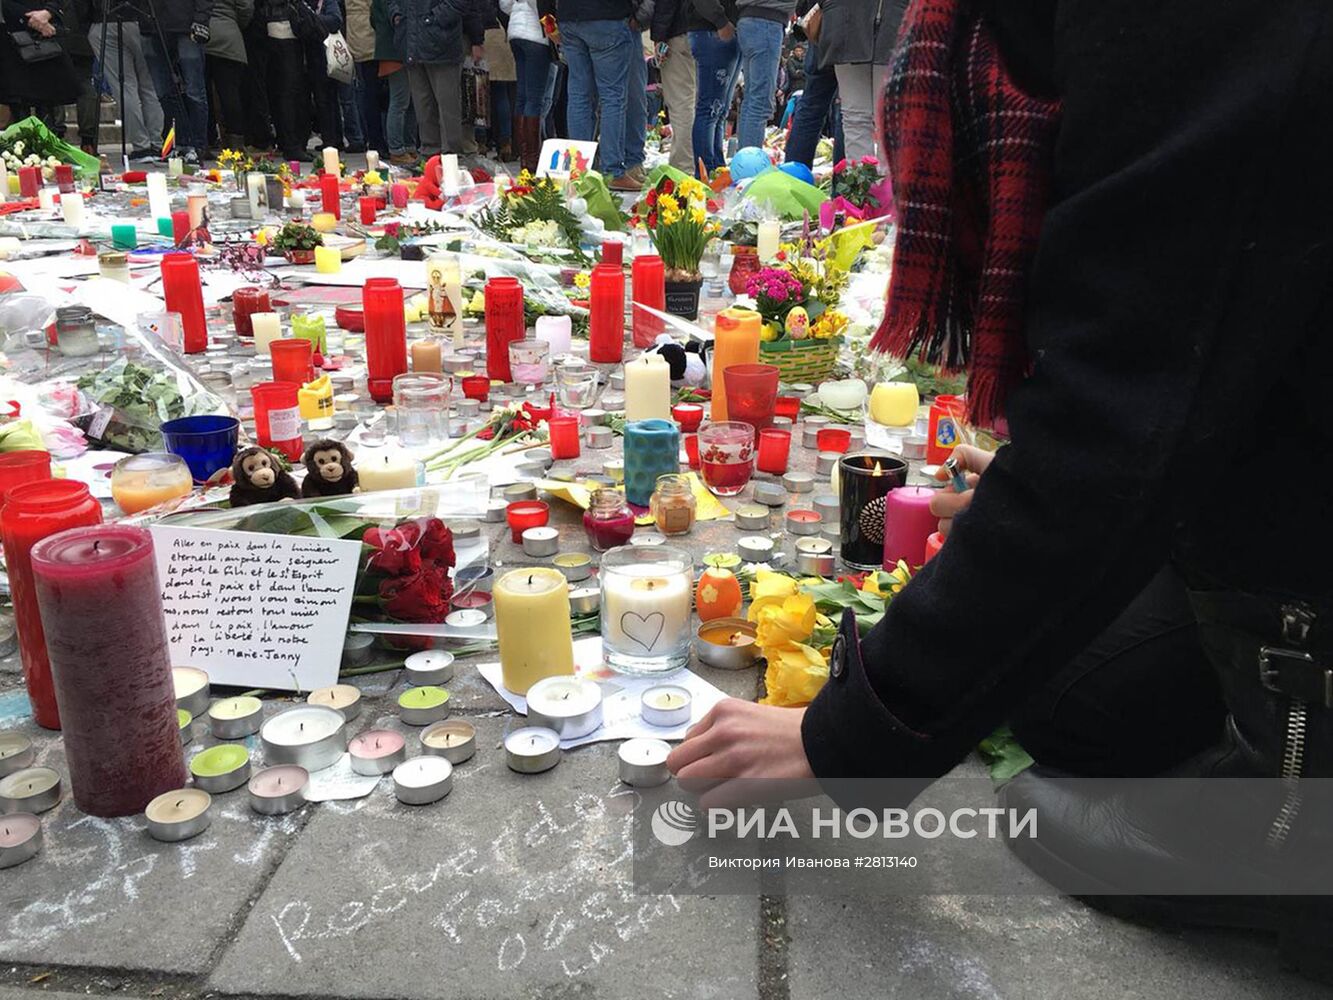 Минута молчания в память о жертвах теракта в Брюсселе